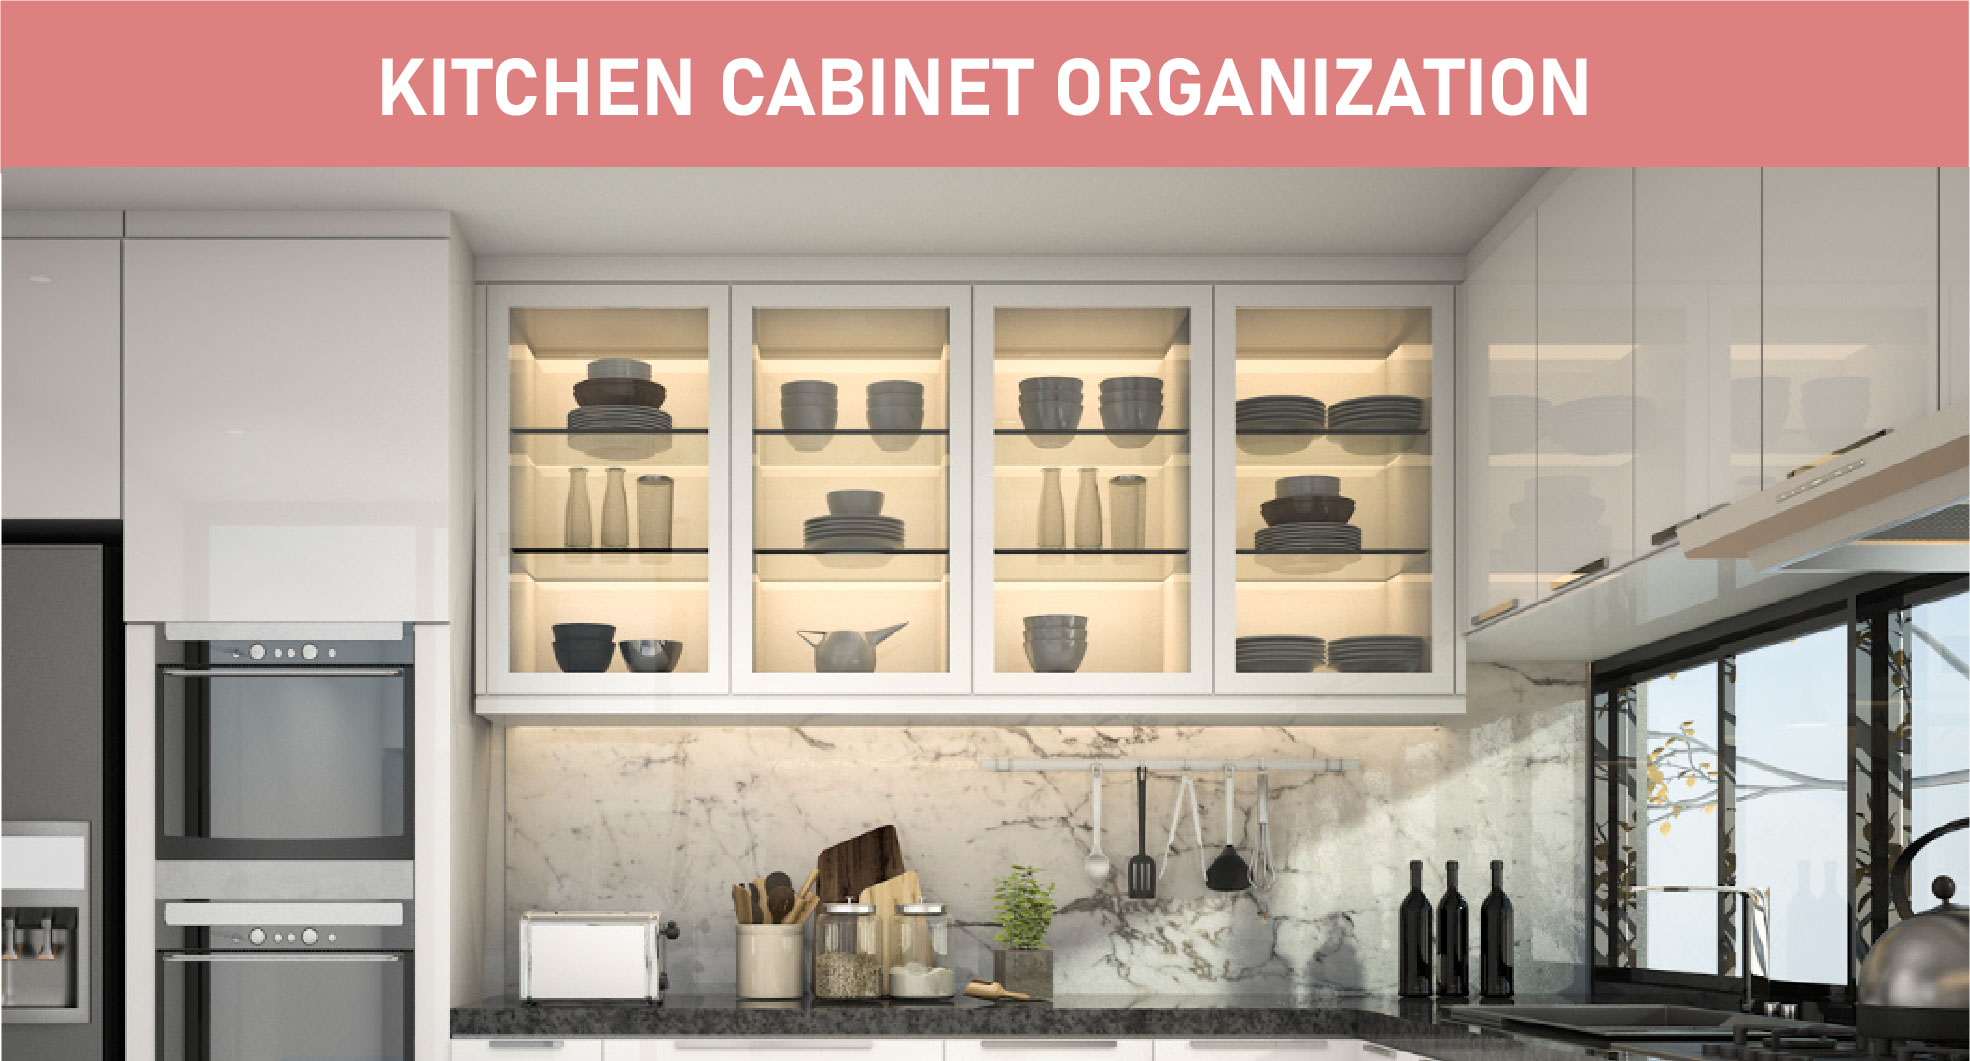 Kitchen Cabinet Organization Featured image